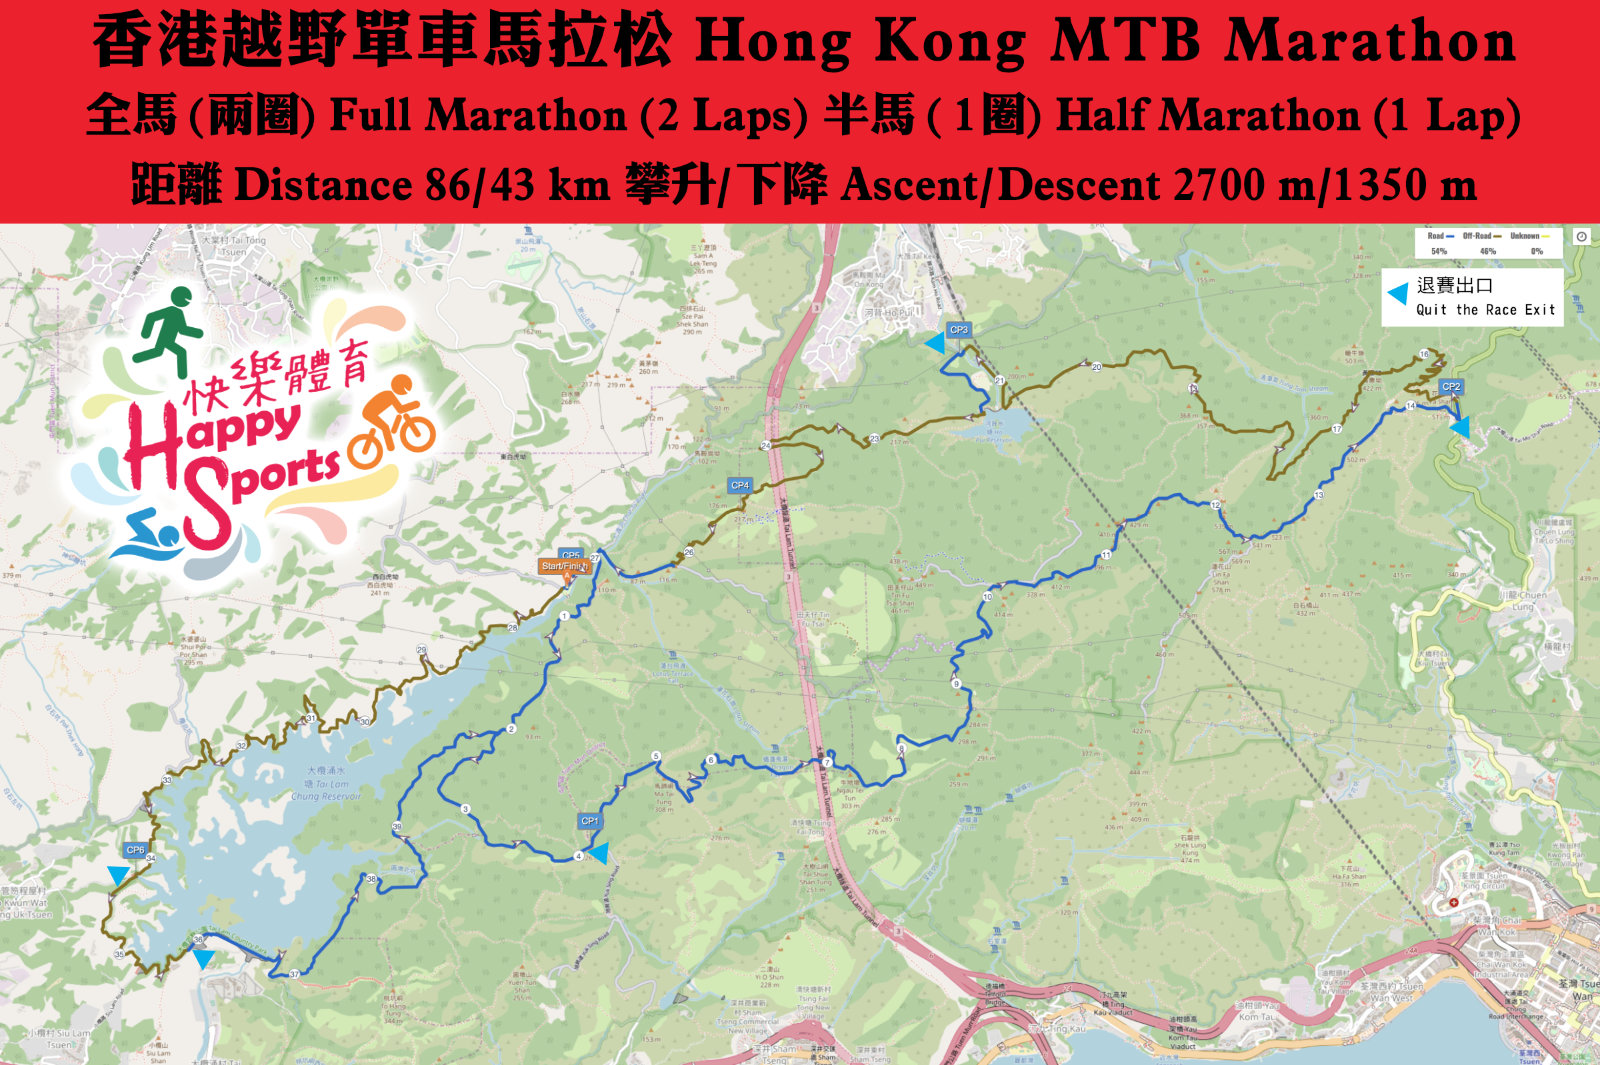 Hong Kong MTB Marathon route V2 web